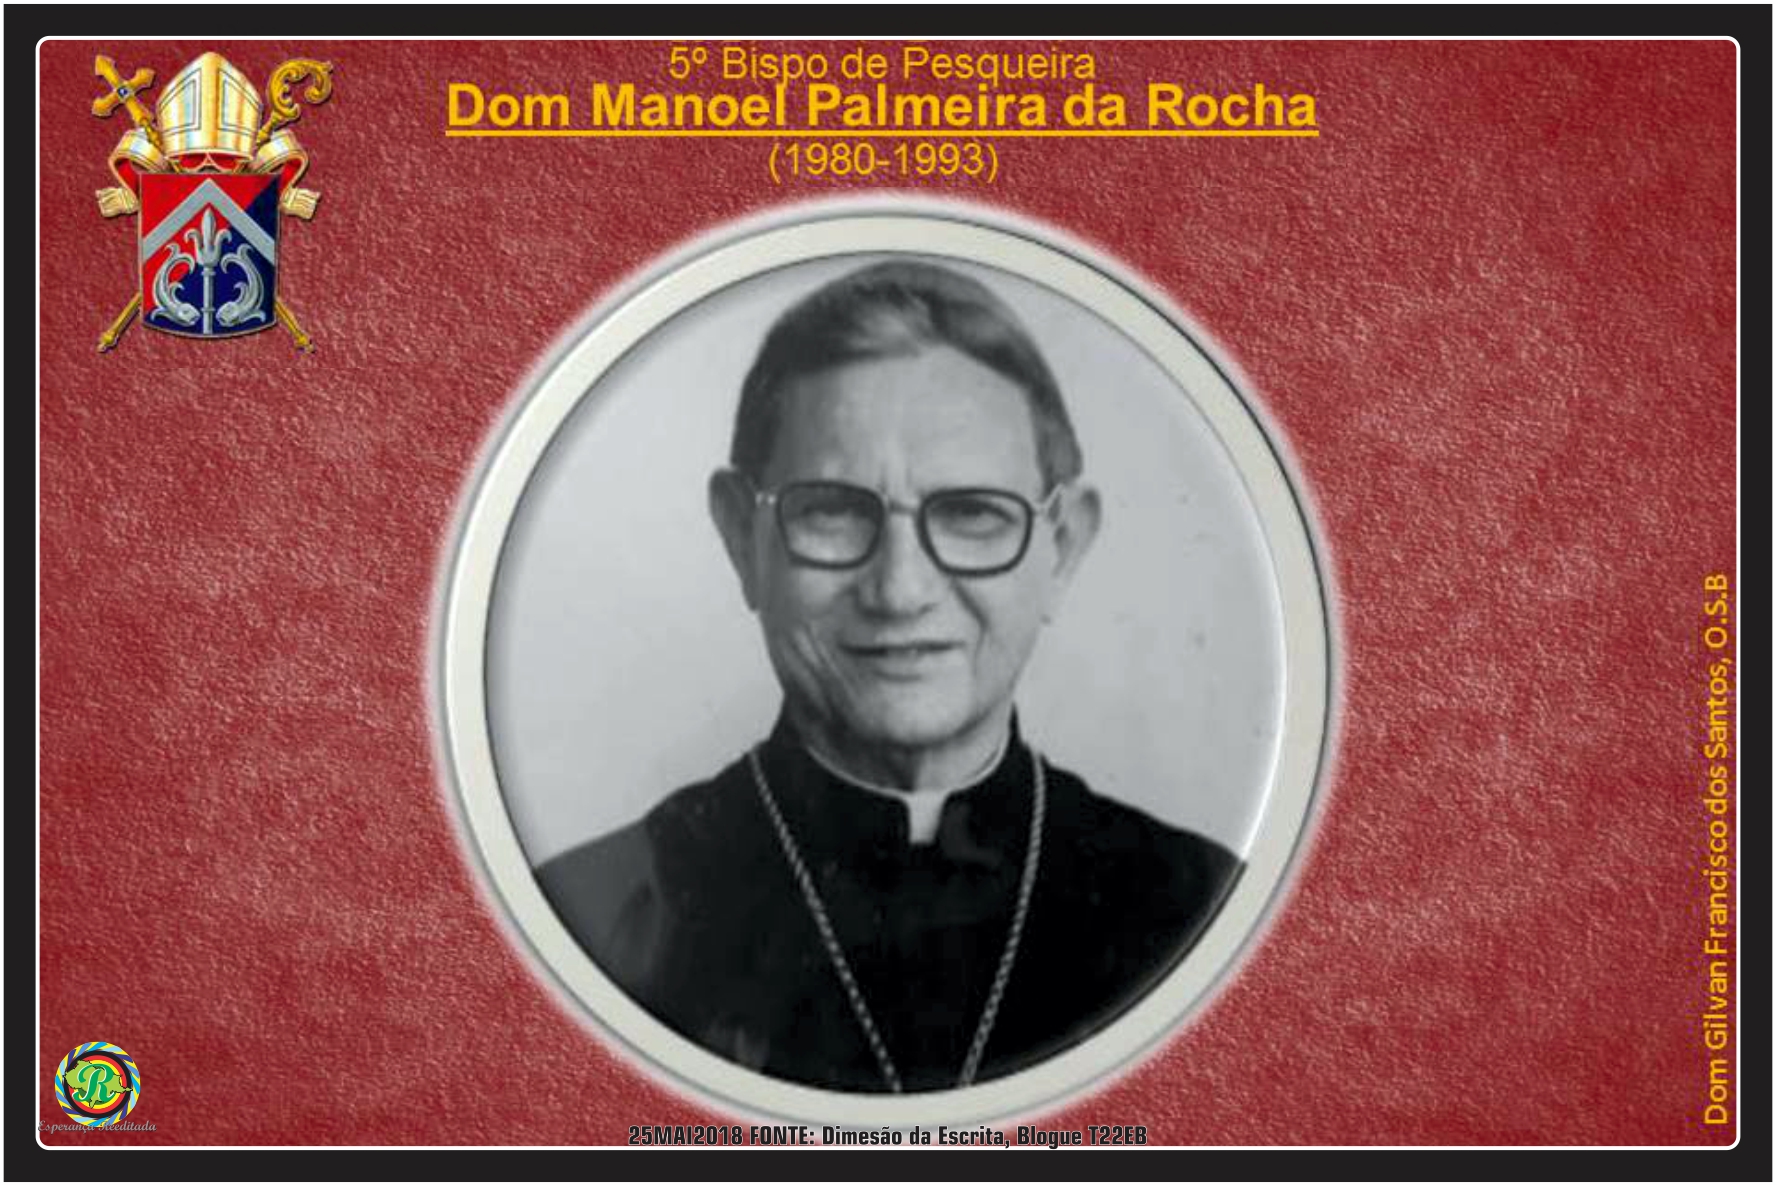 Dom Manoel João Francisco Bispo Emérito 2014 / 2022